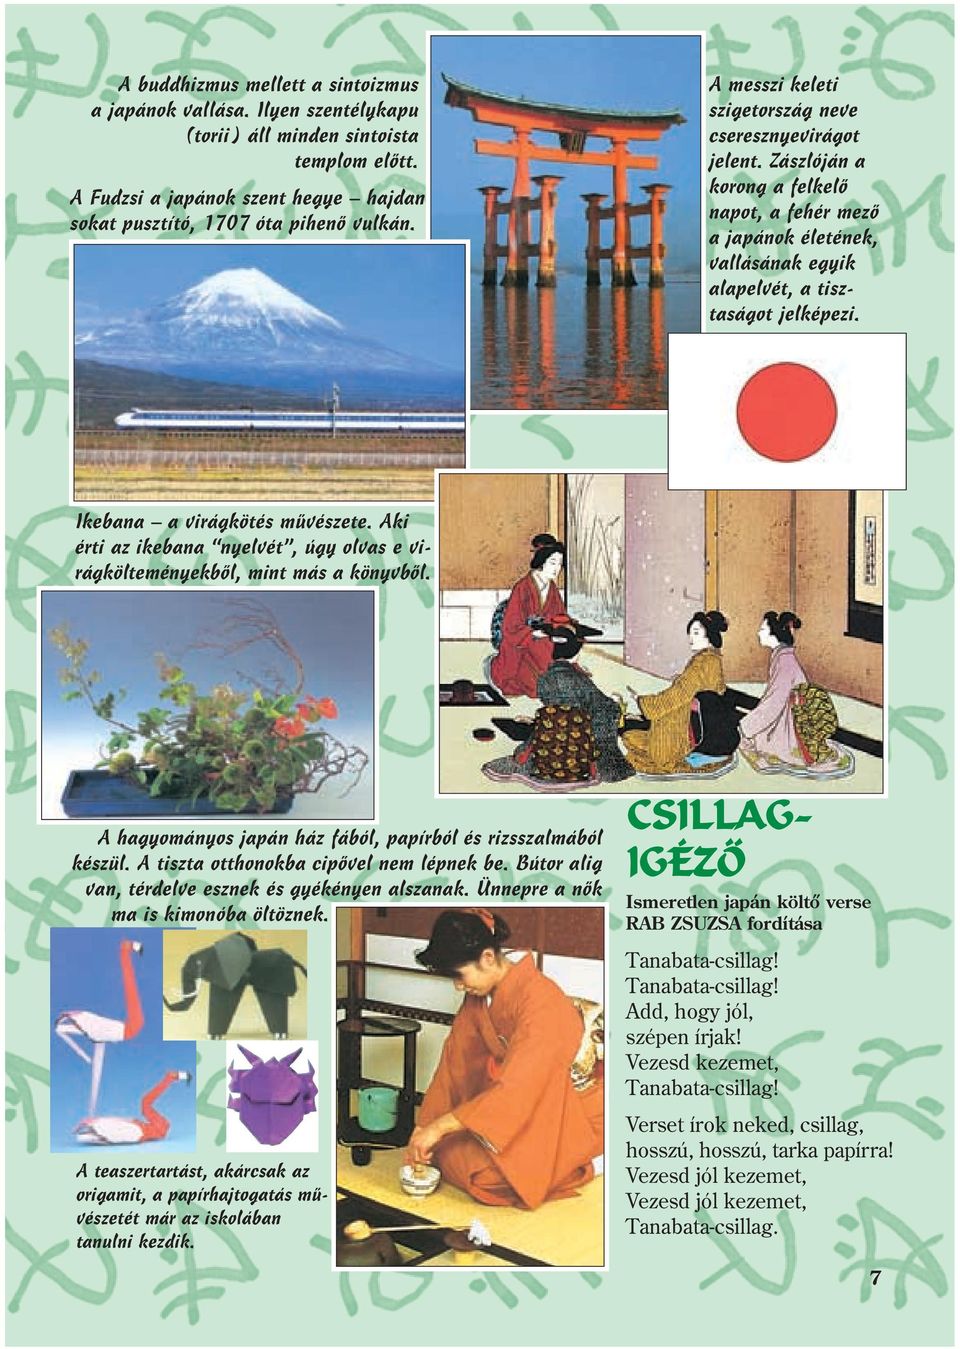 Ikebana a virágköés mûvészee. Aki éri az ikebana nyelvé, úgy olvas e virágköleményekbõl, min más a könyvbõl. A hagyományos japán ház fából, papírból és rizsszalmából készül.